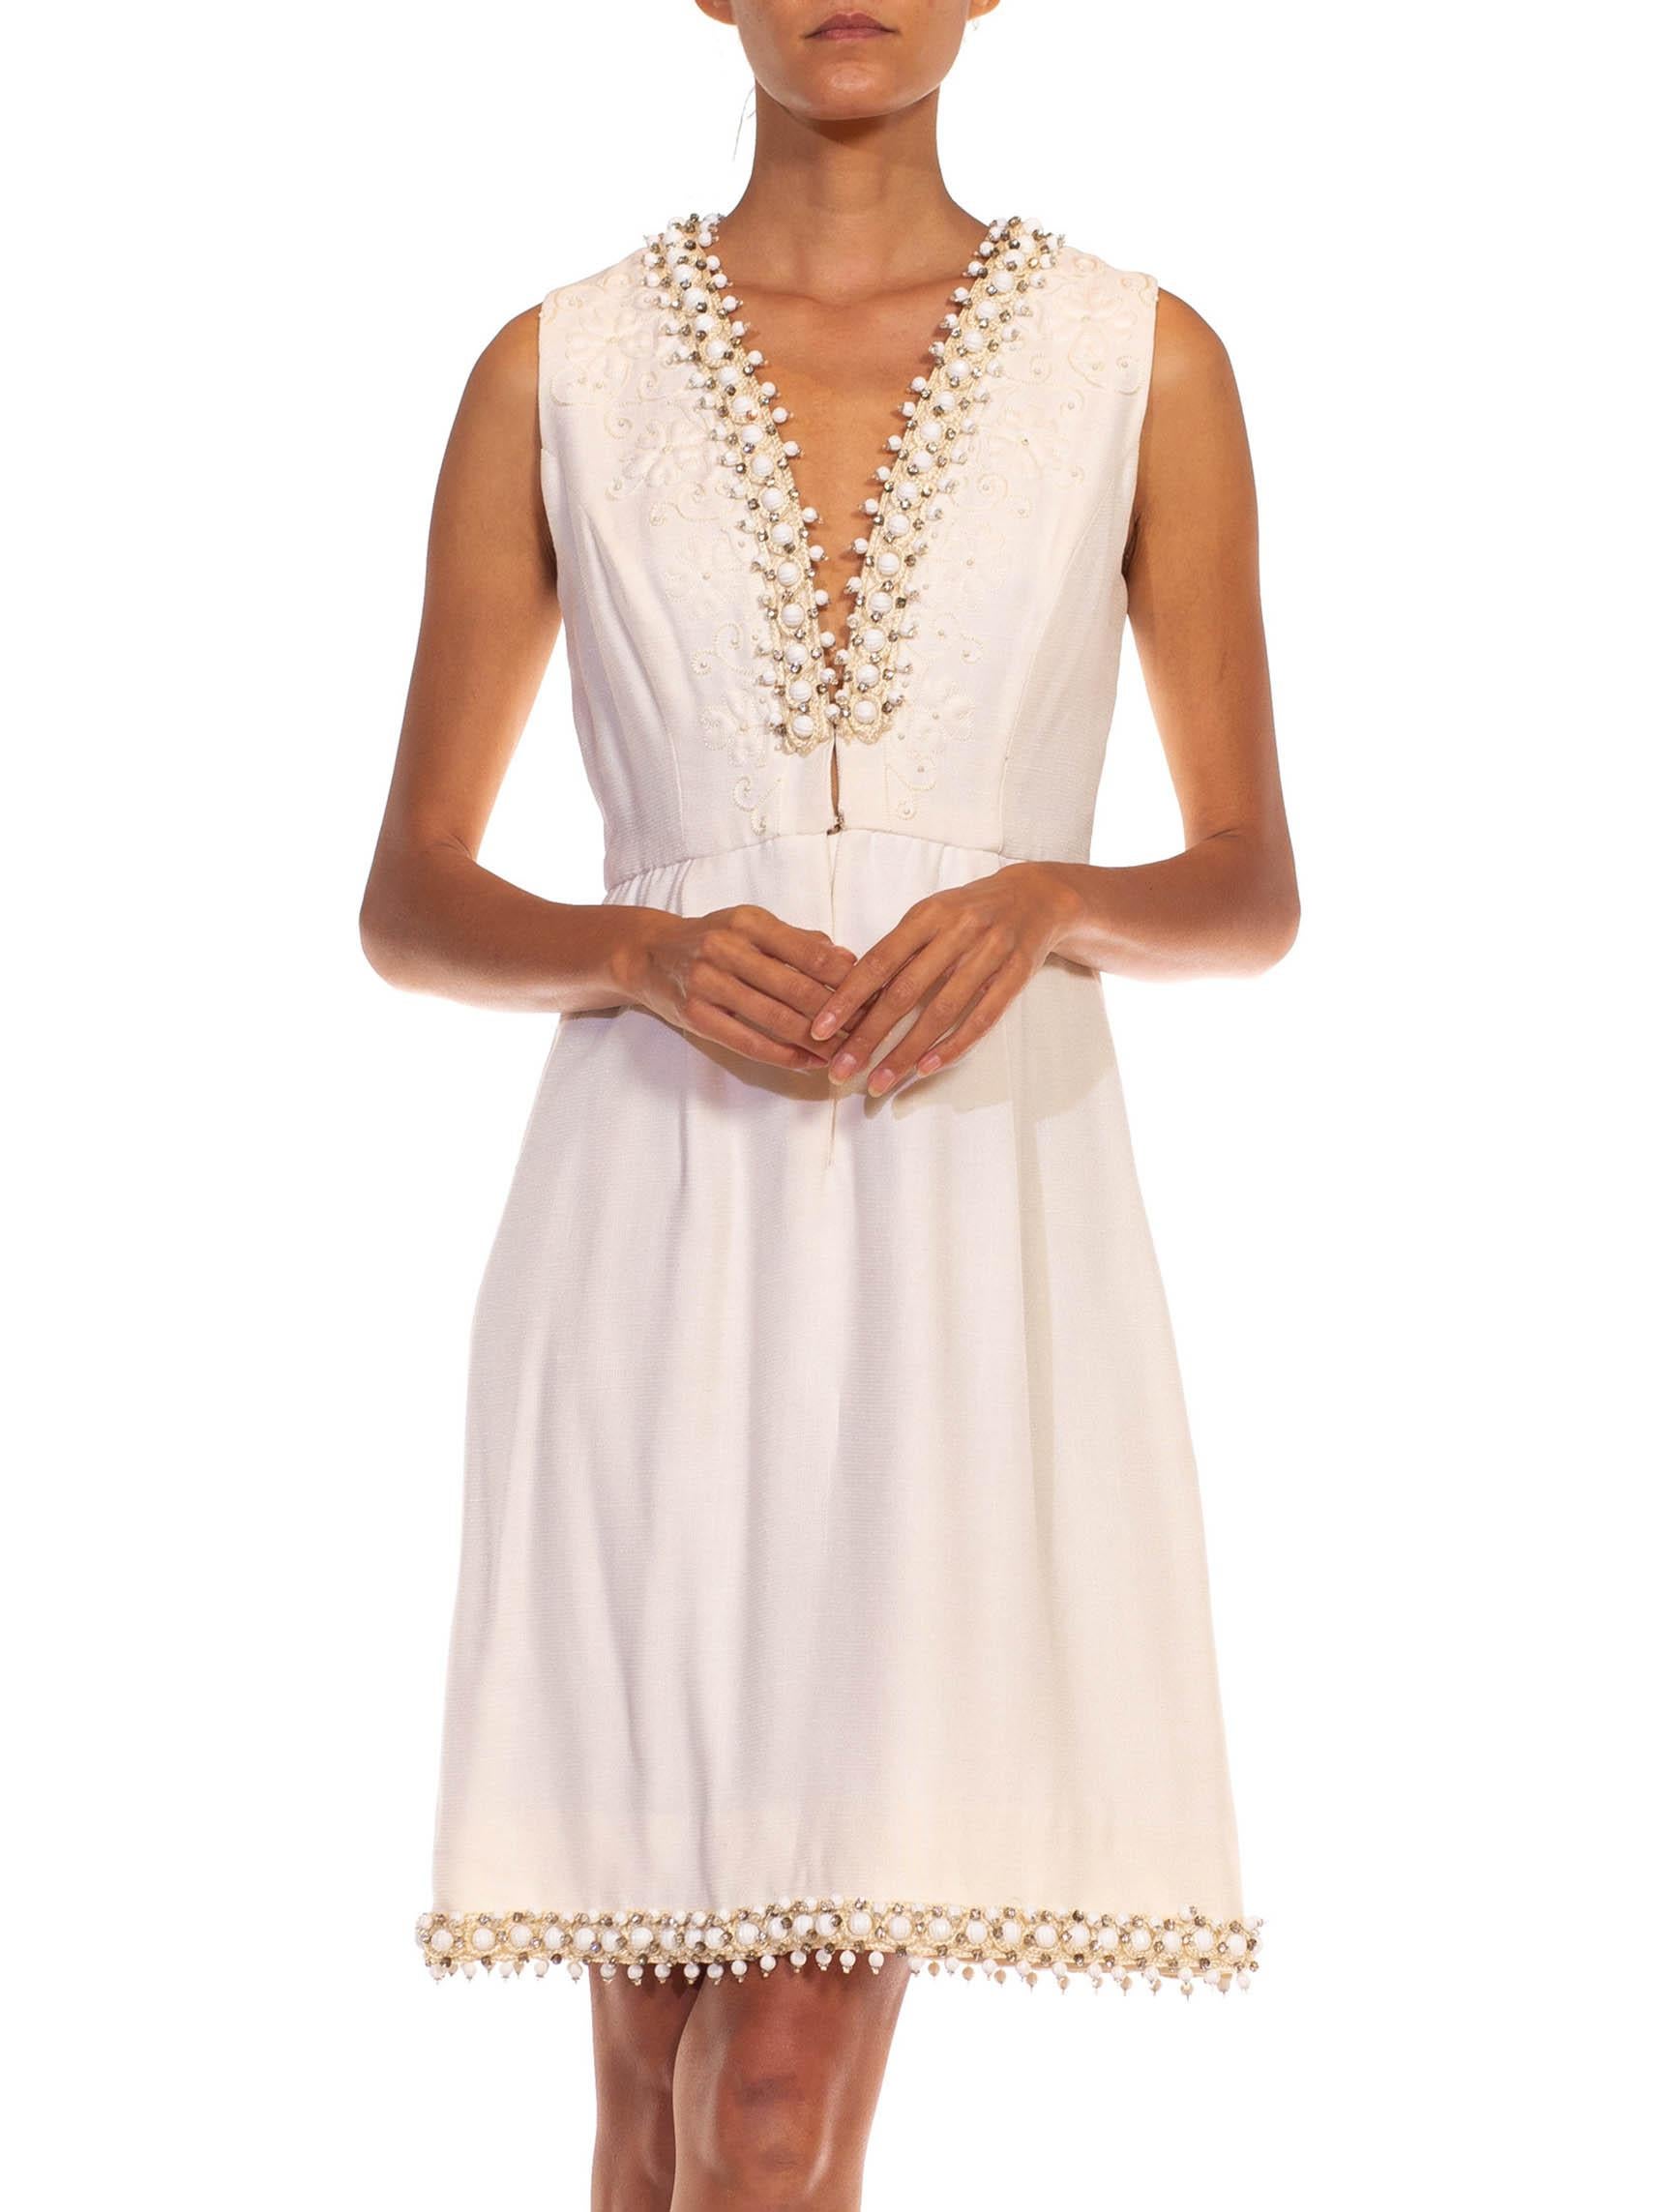 1960S OSCAR DE LA RENTA White Wool Blend Plunging V Neck Mod Dress With Crystals For Sale 1